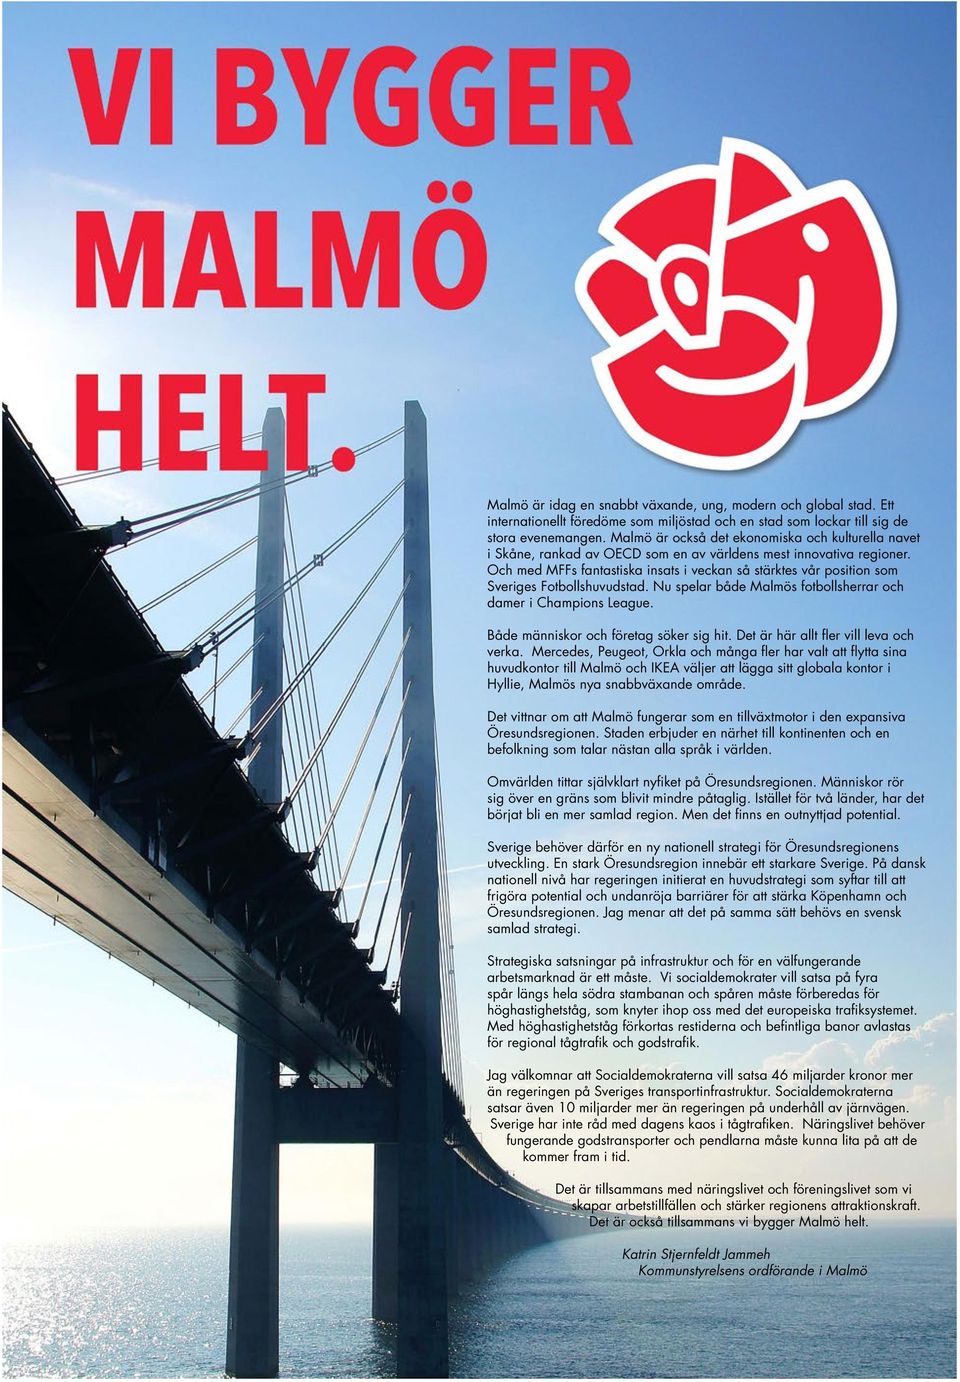 Och med MFFs fantastiska insats i veckan så stärktes vår position som Sveriges Fotbollshuvudstad. Nu spelar både Malmös fotbollsherrar och damer i Champions League.